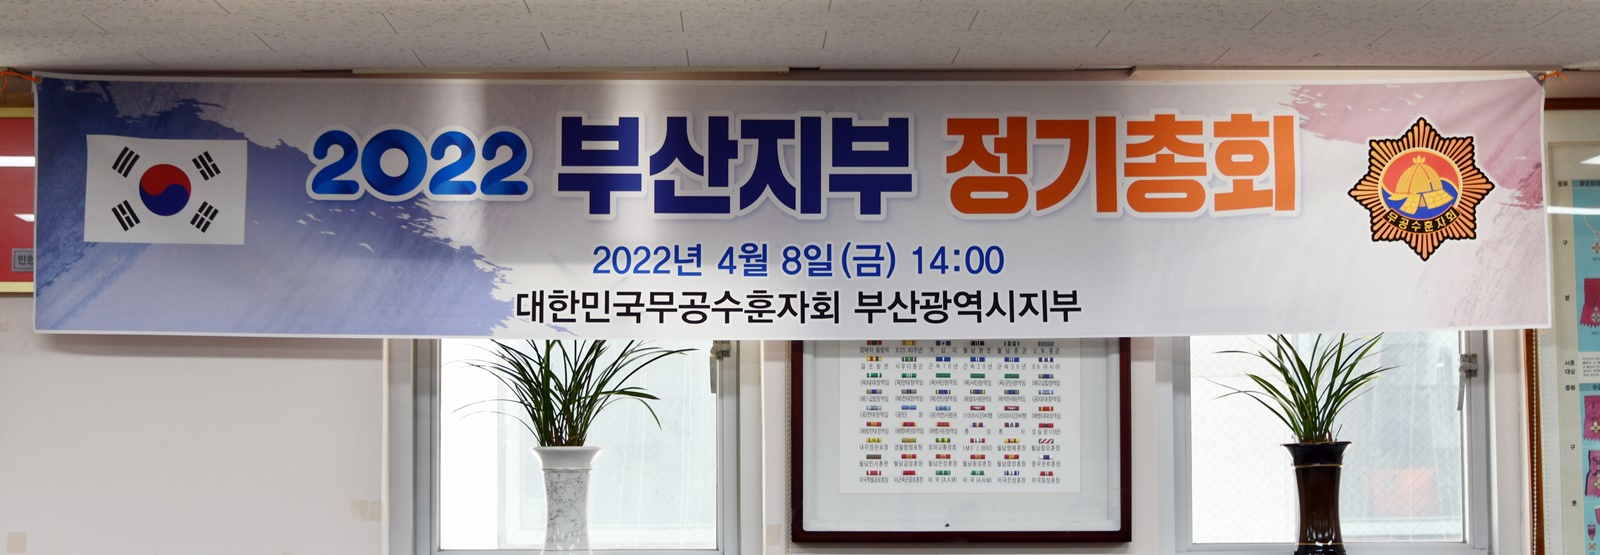 2022년도 정기지부회의(총회) 개최